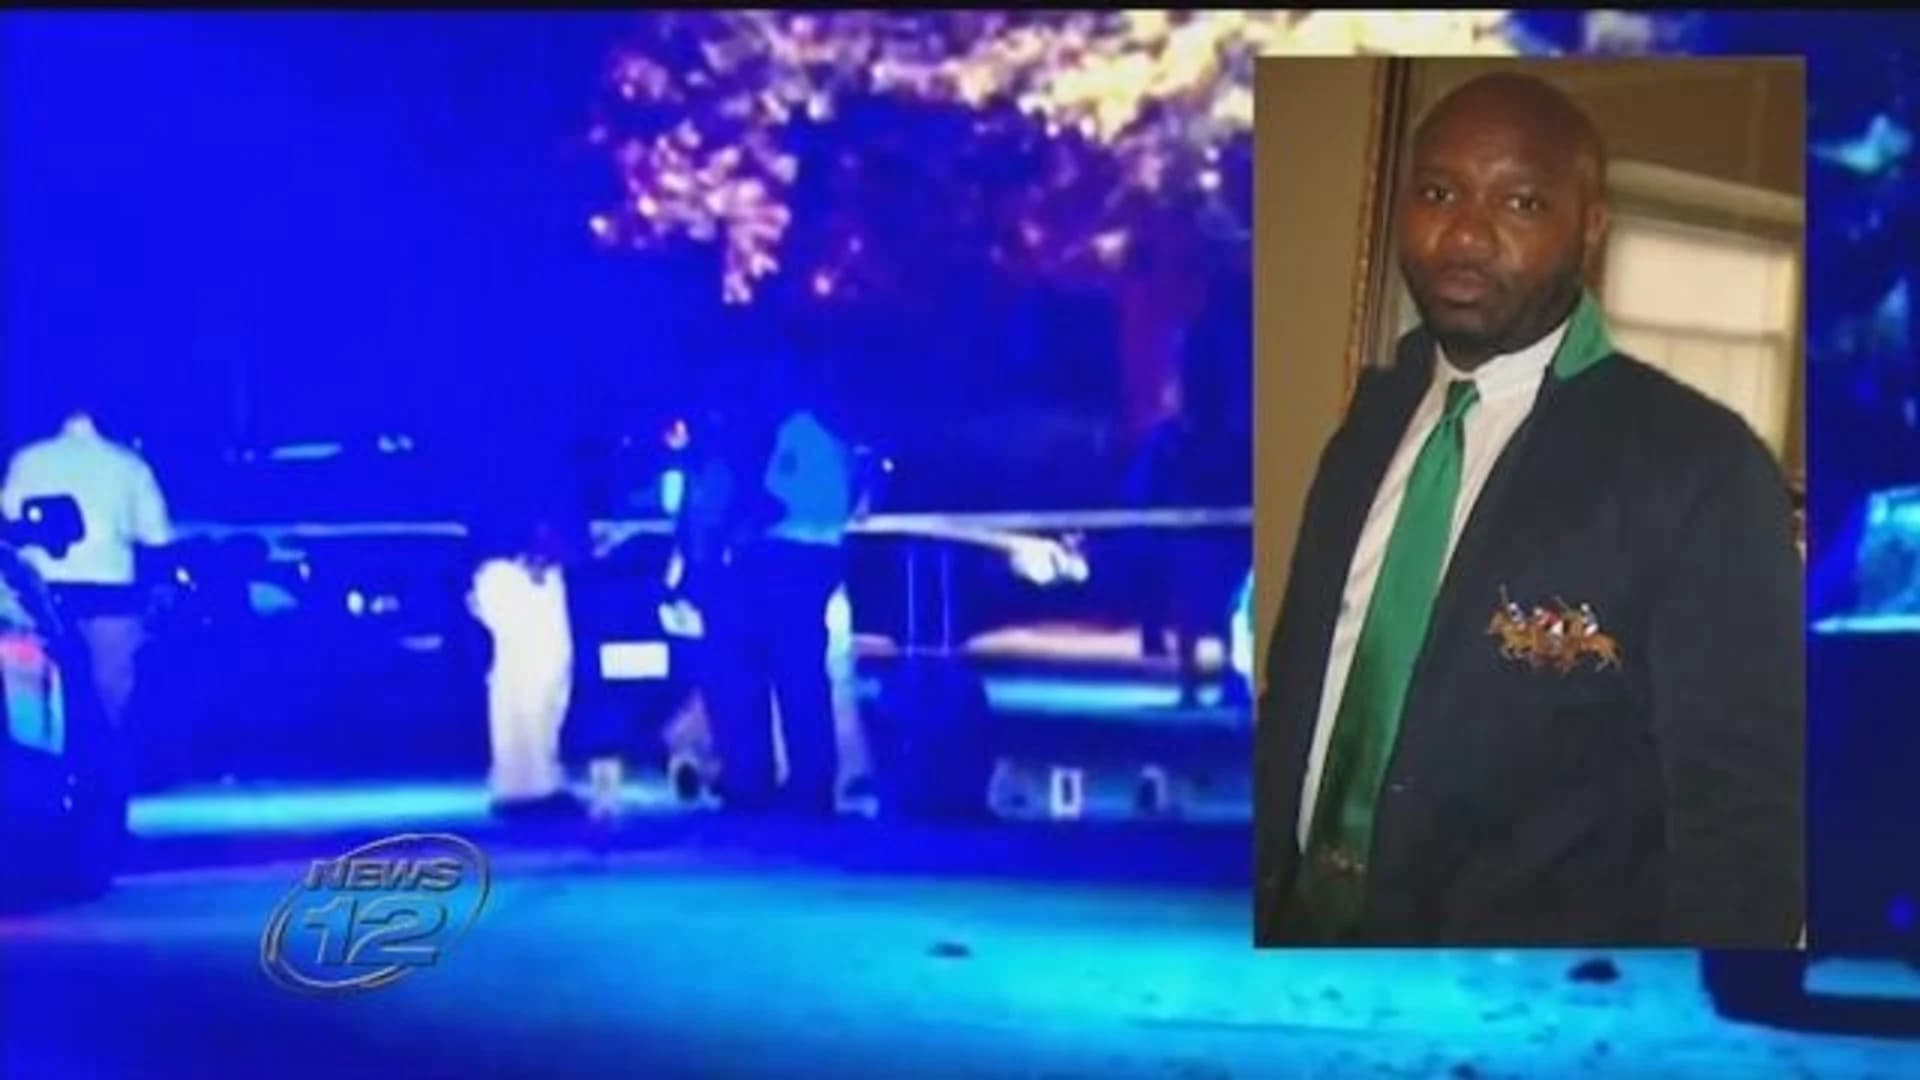 Beloved teacher gunned down in East Orange shooting